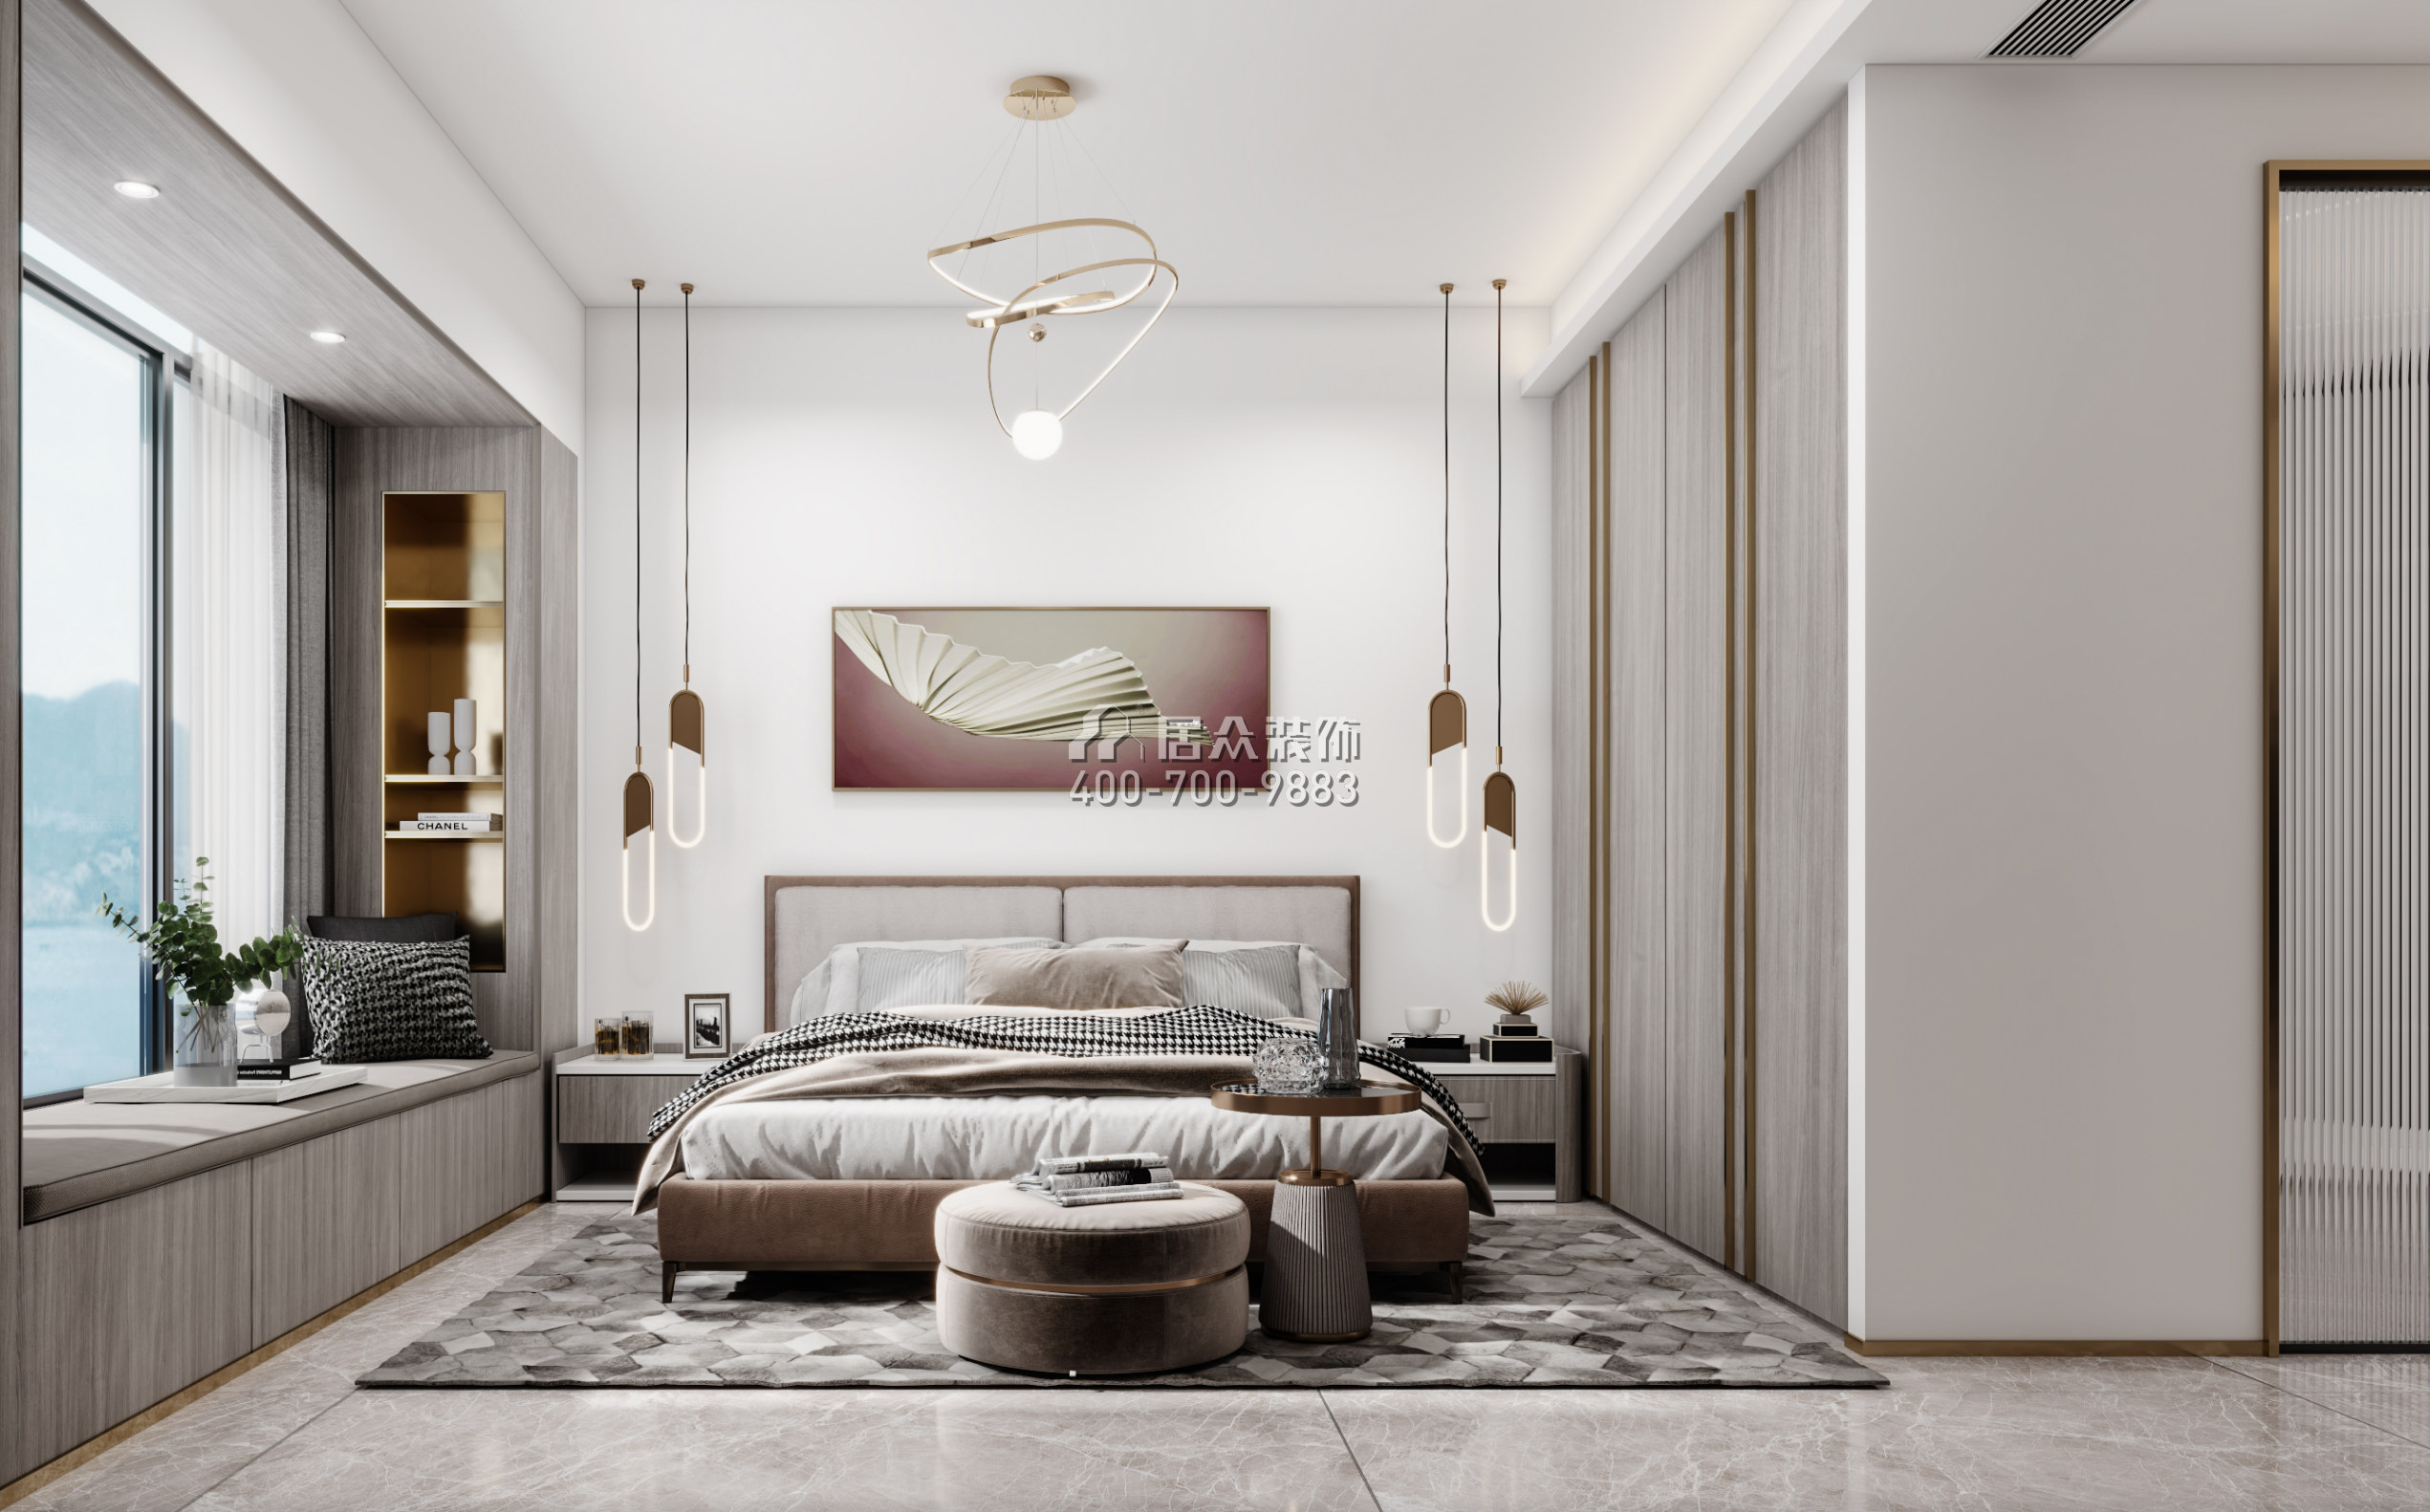 前海时代180平方米现代简约风格平层户型卧室装修效果图